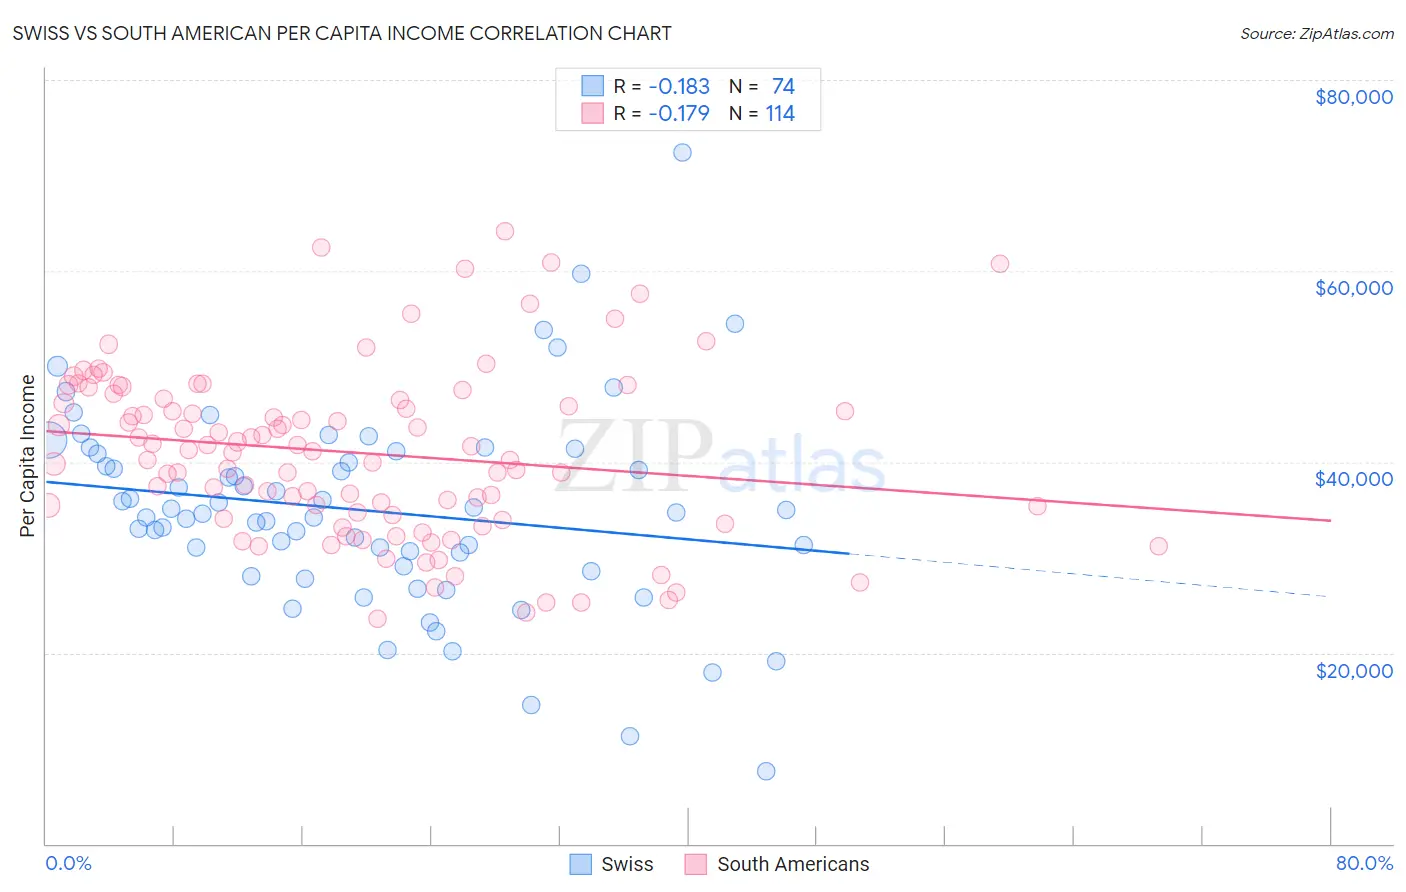 Swiss vs South American Per Capita Income